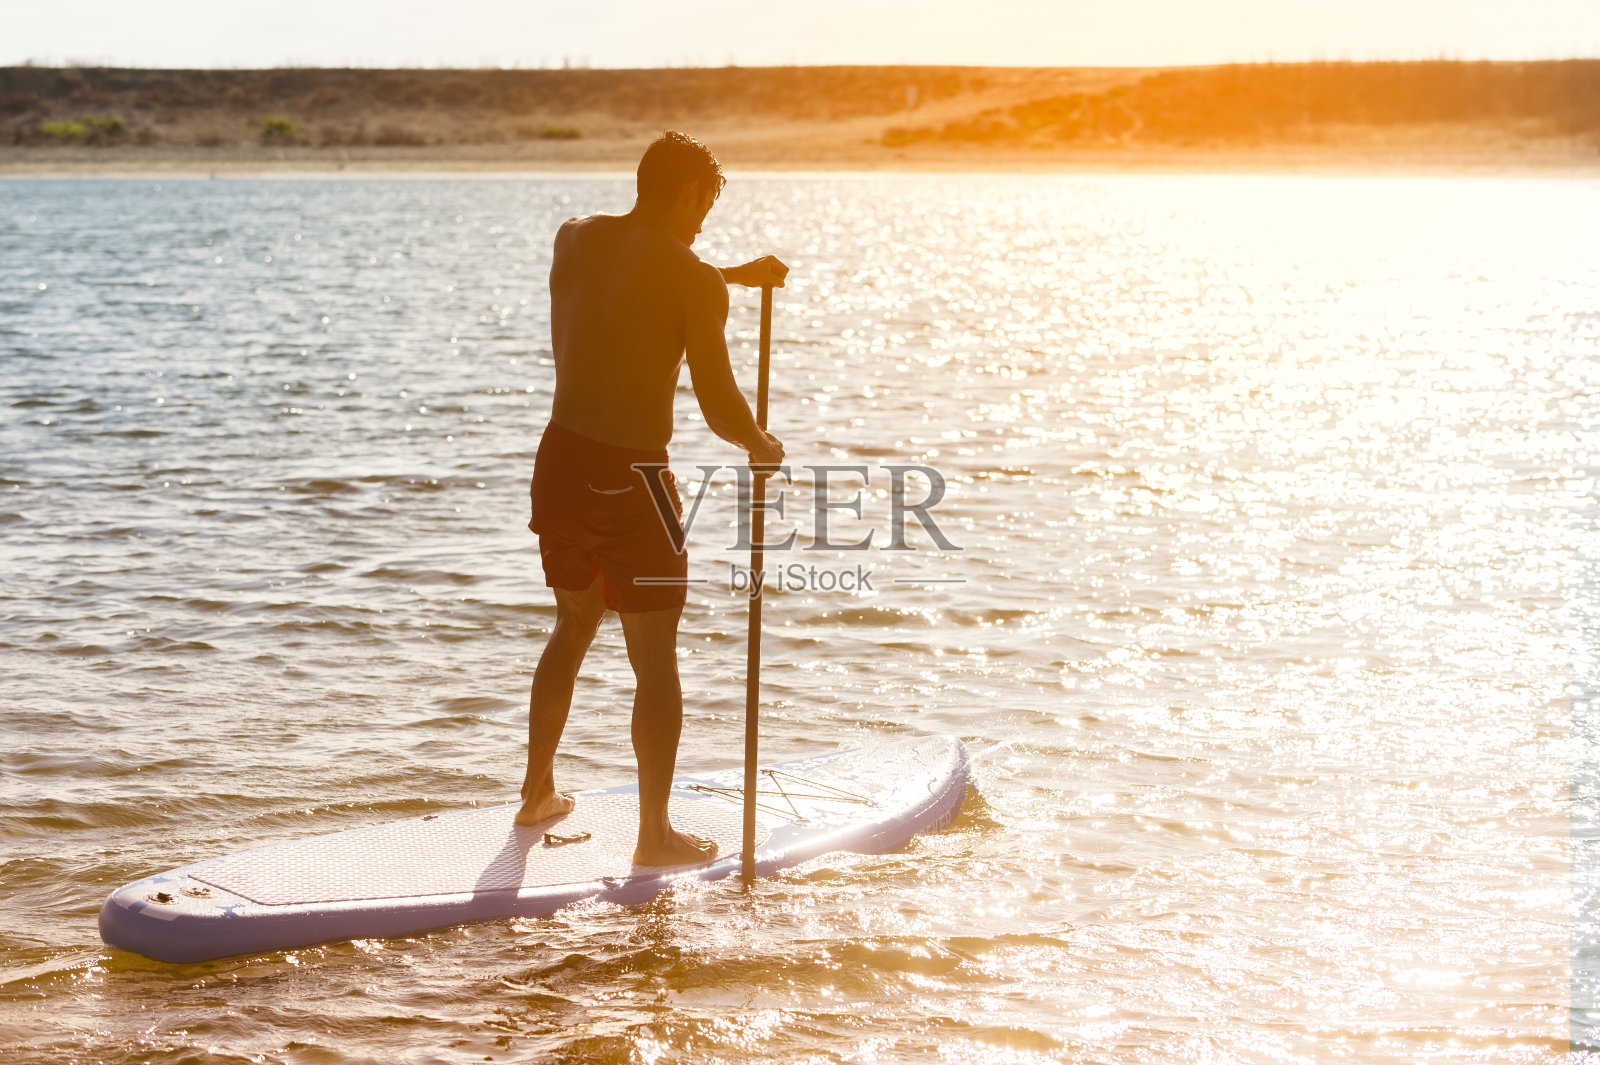 男子站立式桨板照片摄影图片